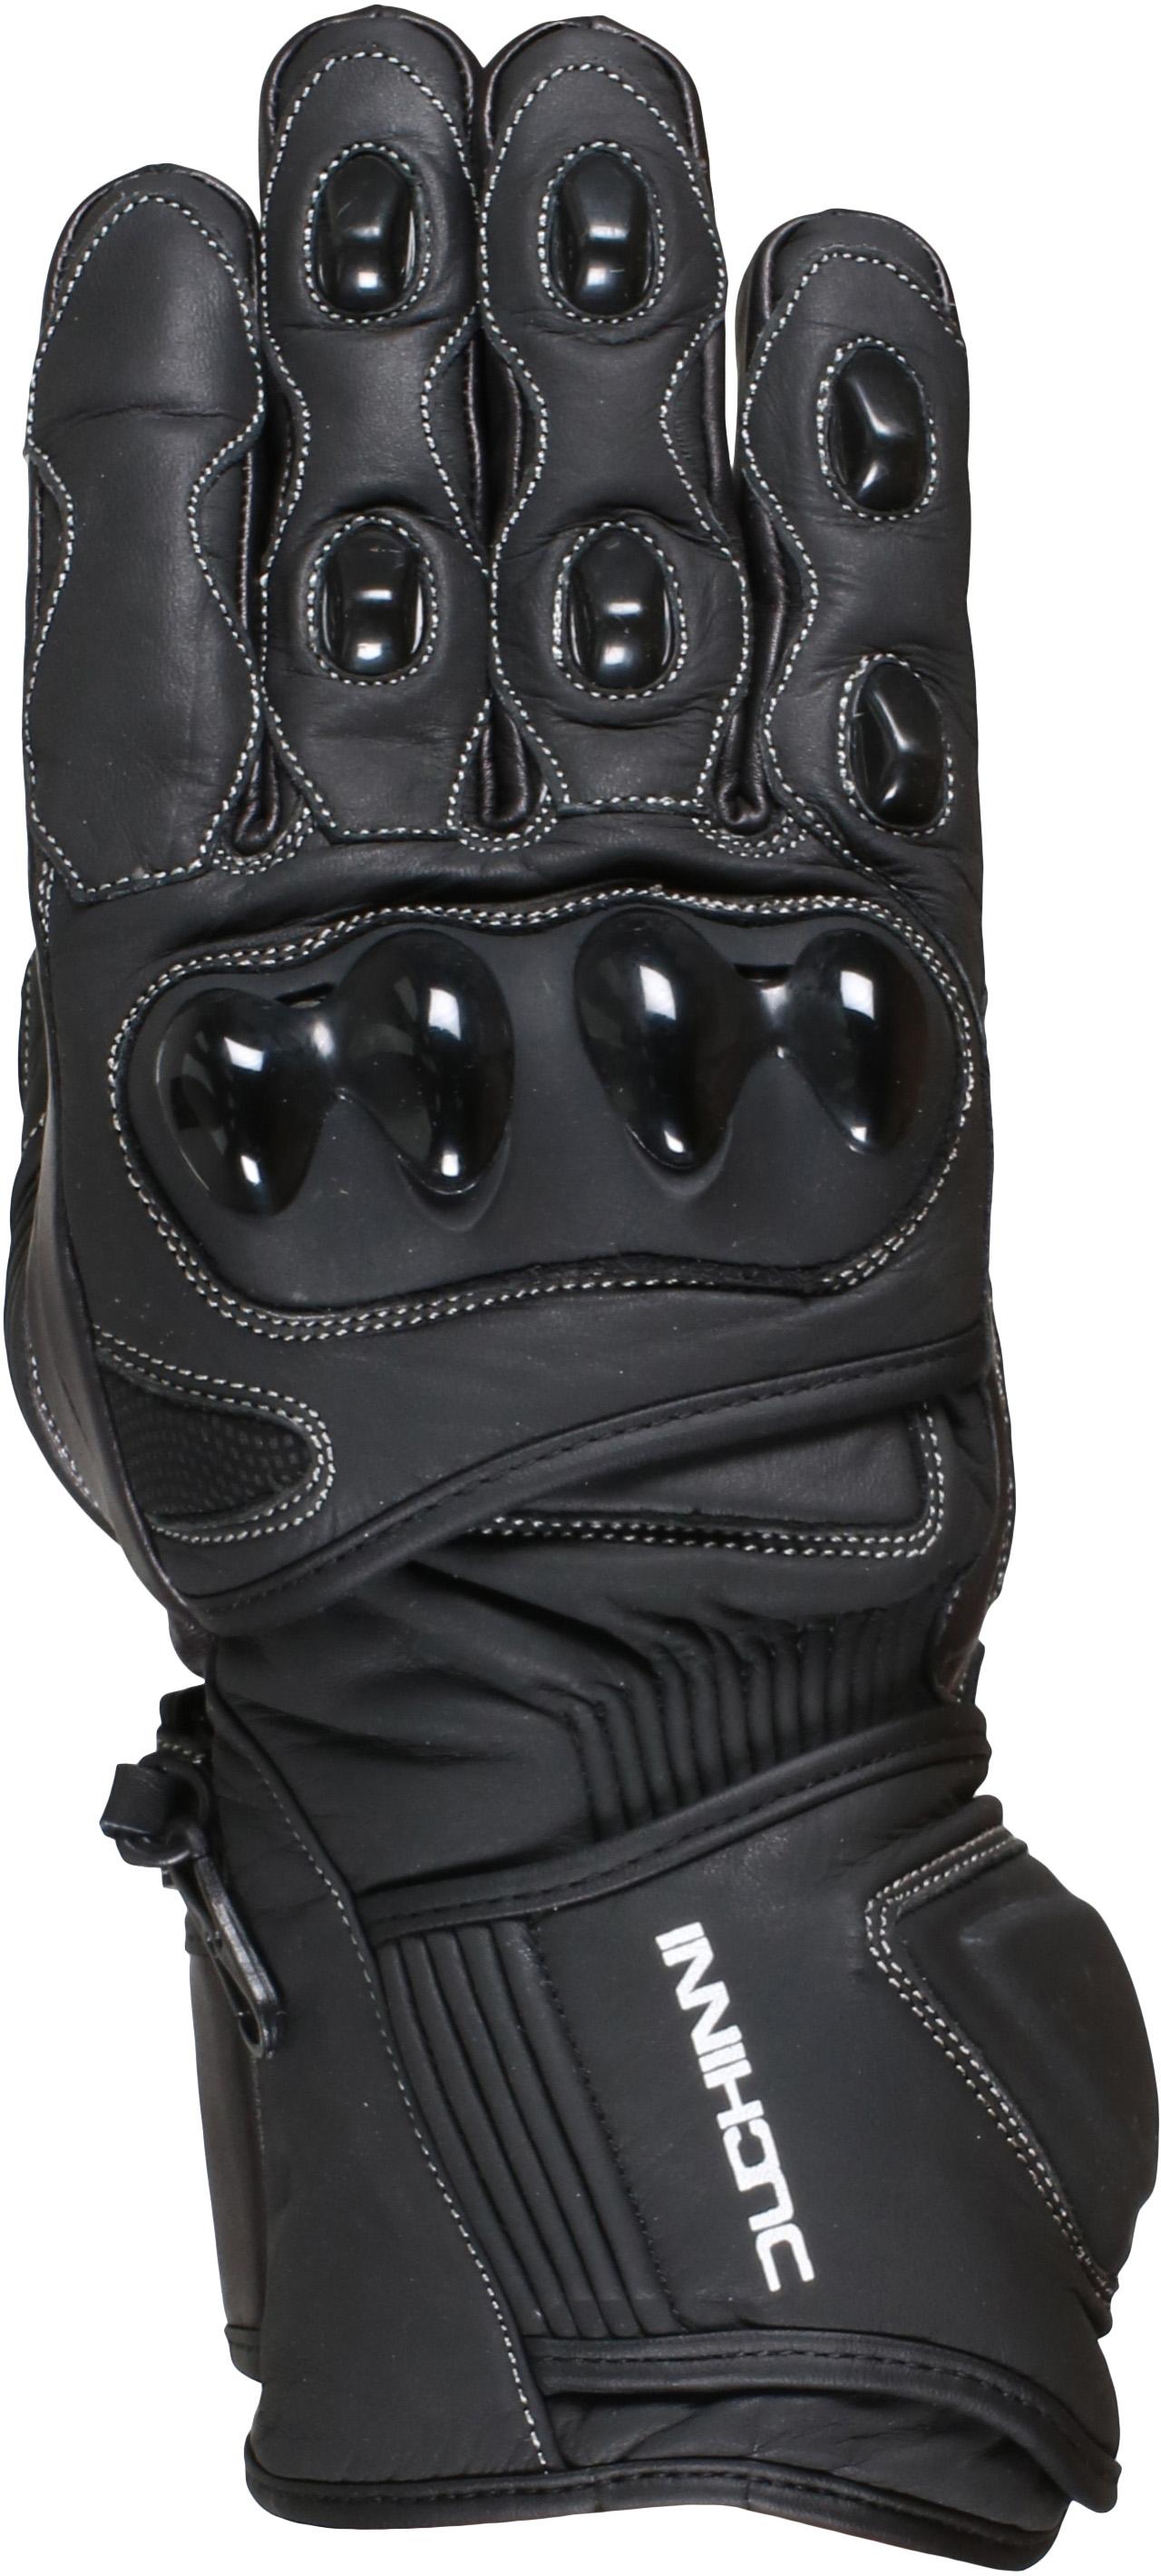 Duchinni Spartan Motorcycle Gloves - Black, M